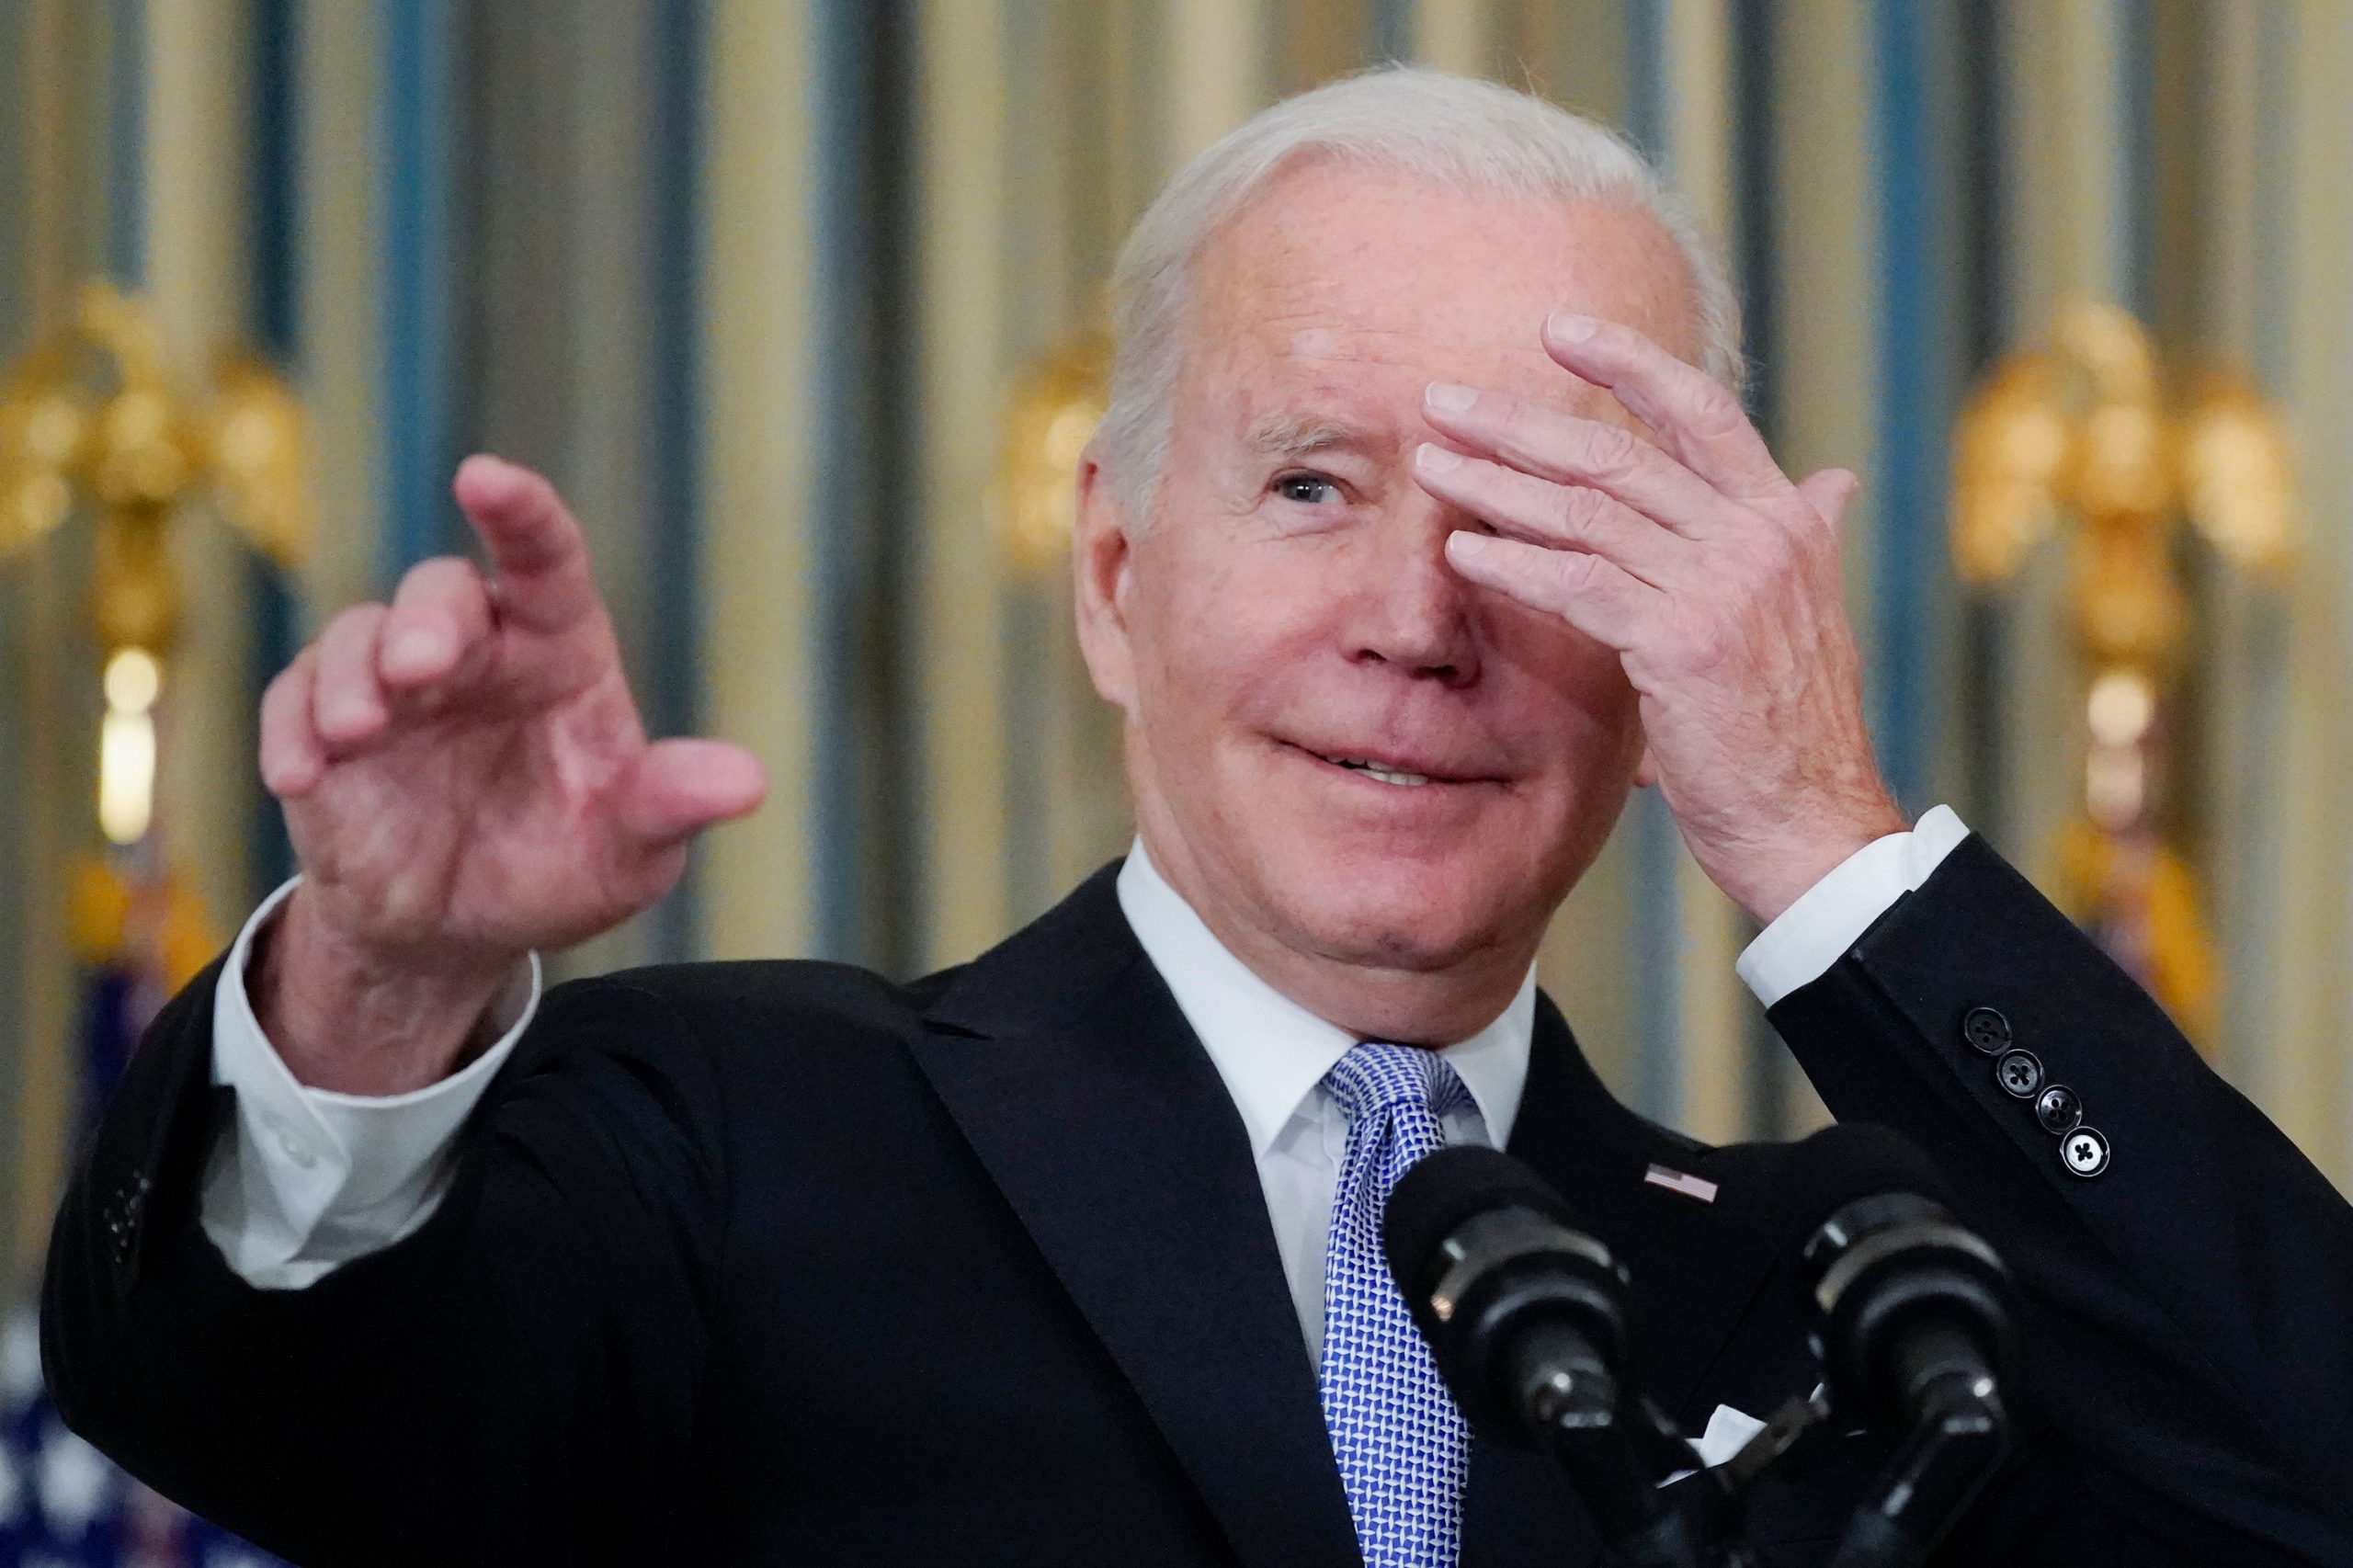 Congresswoman says Biden a ‘dementia-ridden piece of crap’ after SOTU gaffe